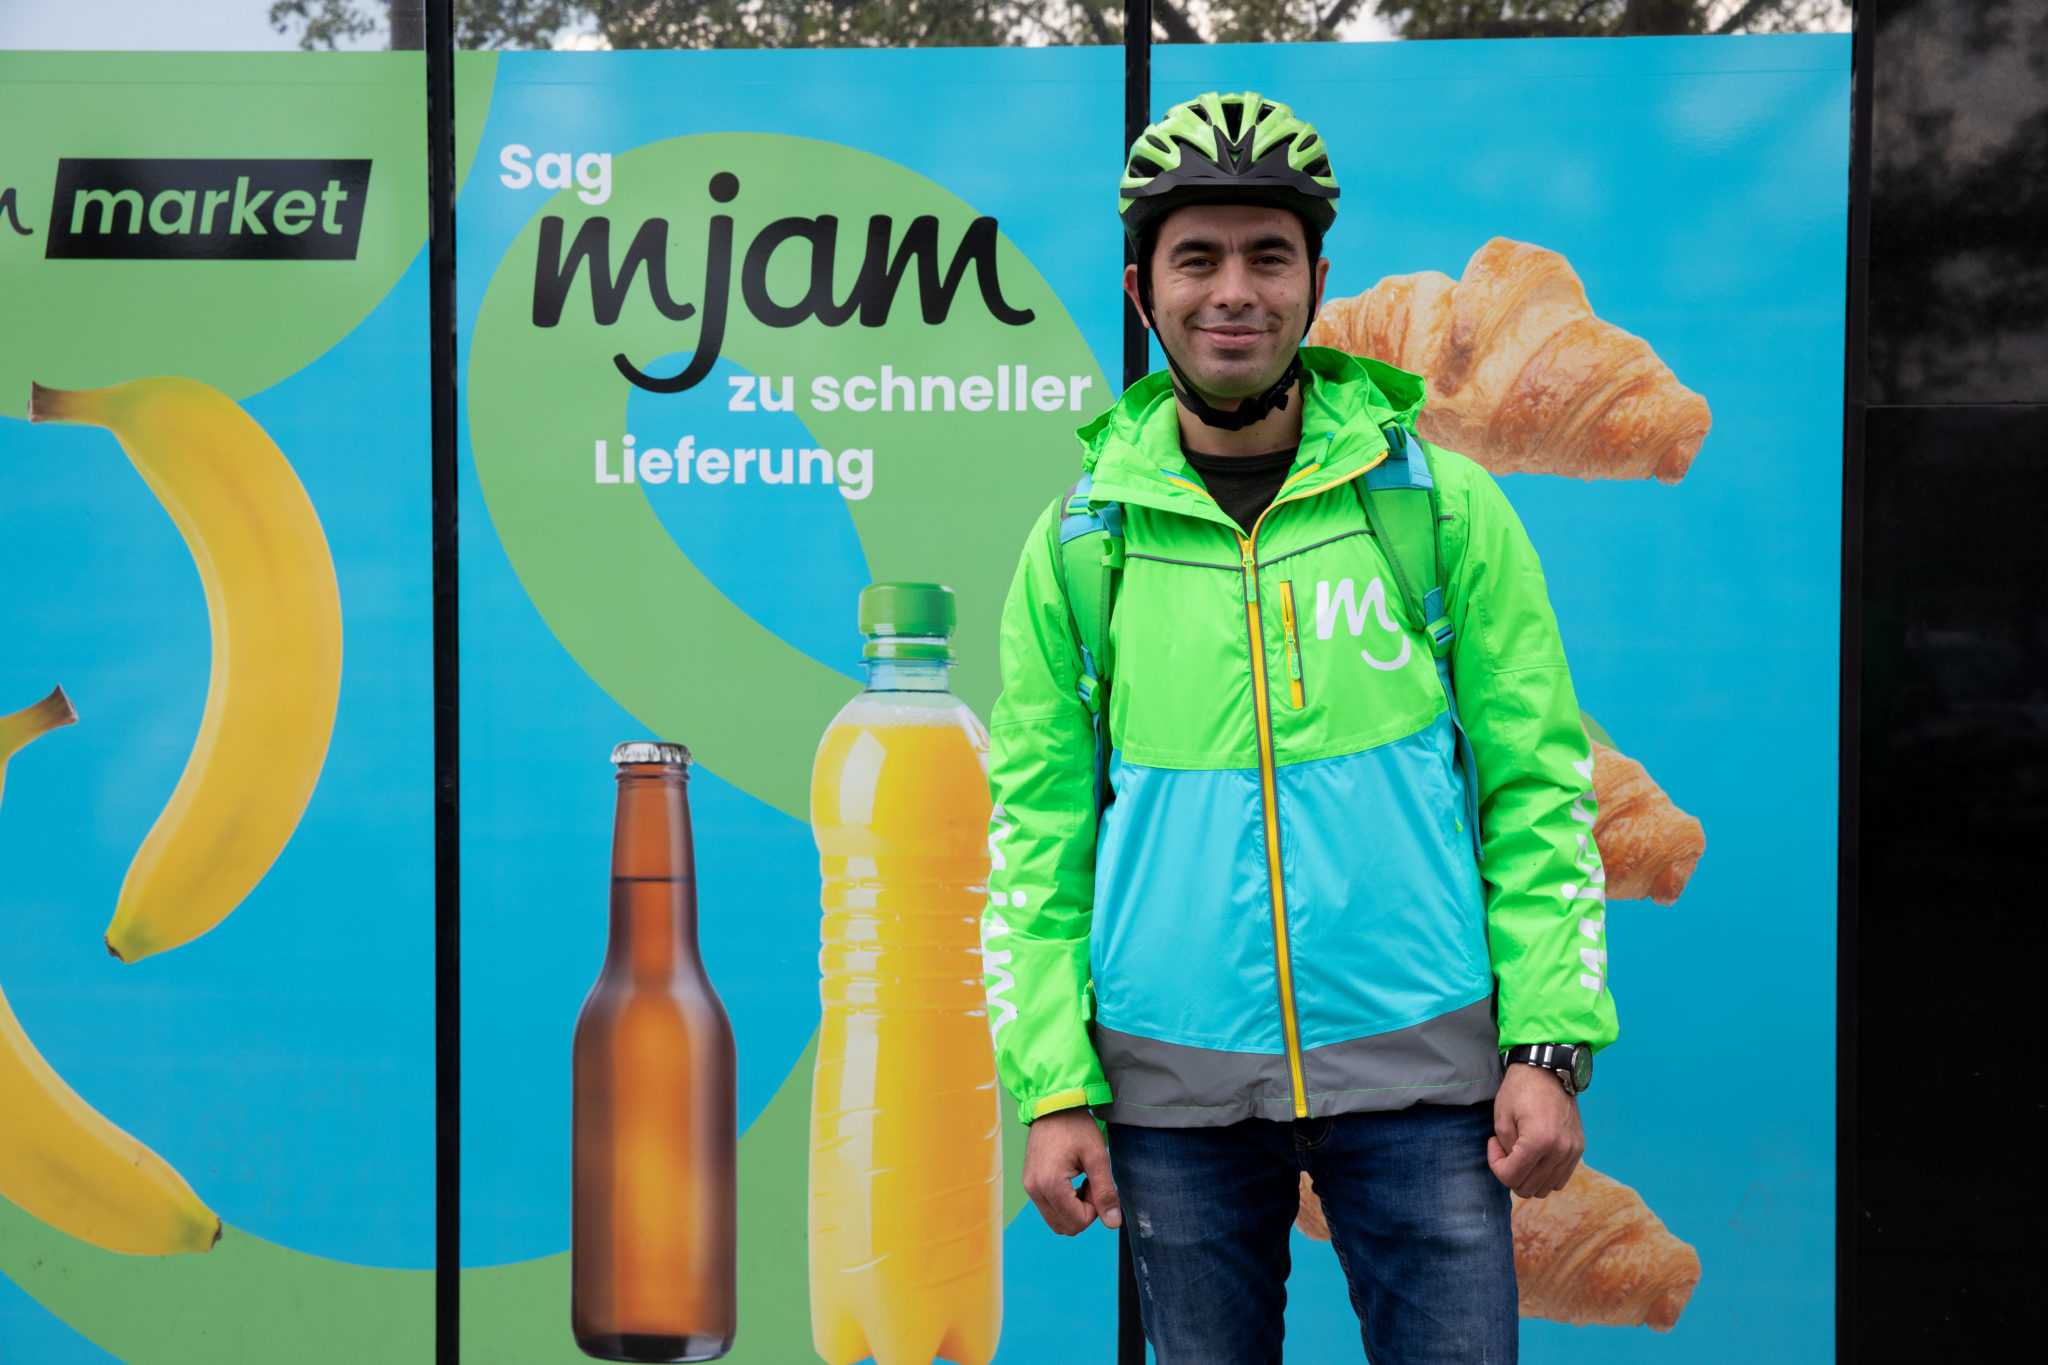 mjam market expandiert Richtung Westen: Lebensmittellieferung jetzt auch in Innsbruck gestartet